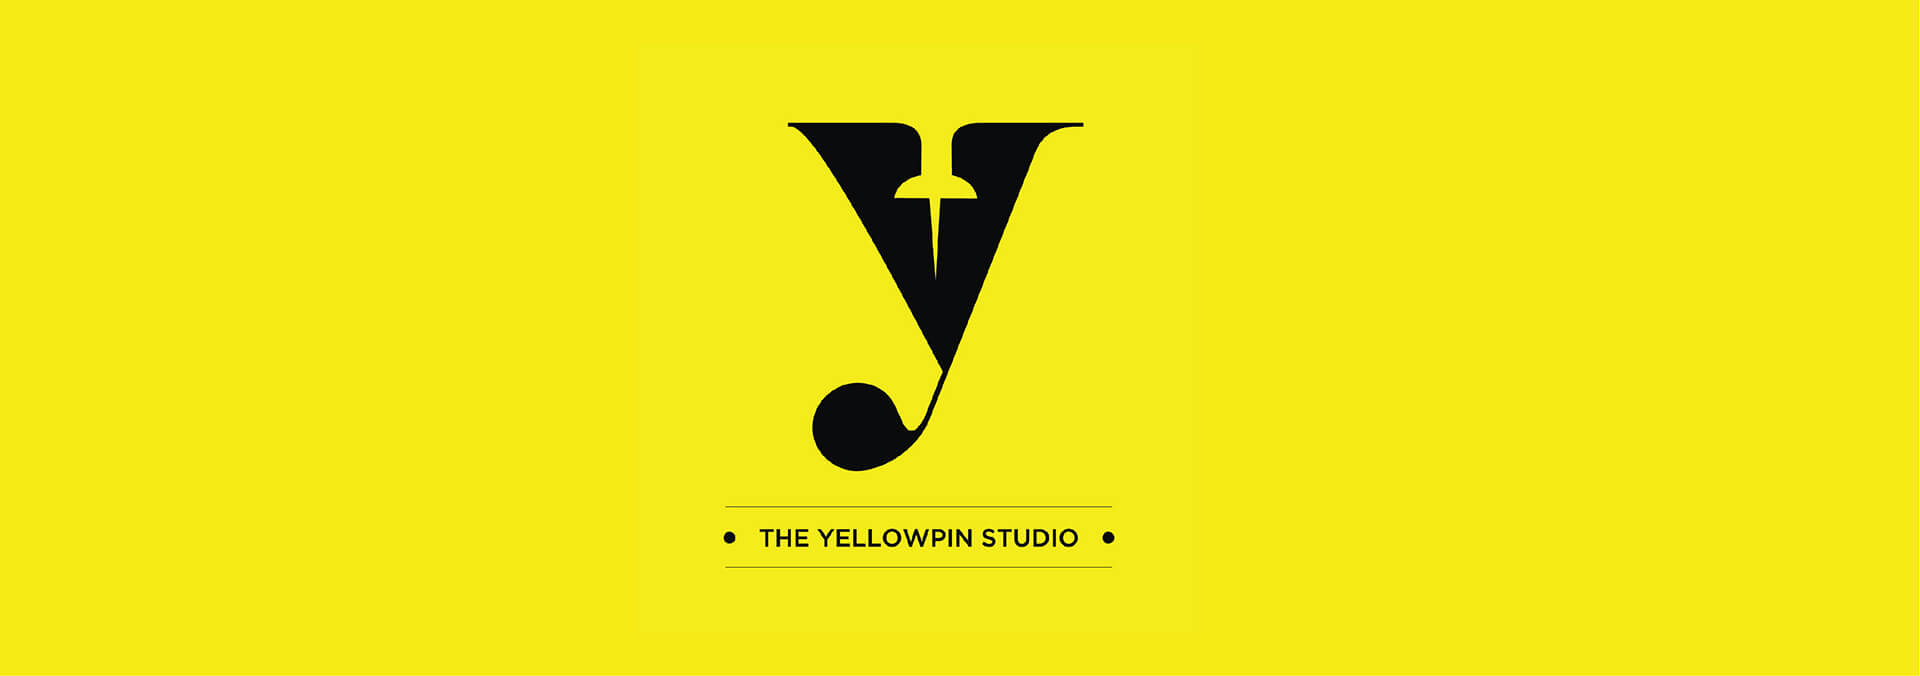 Yellowpin studio logo